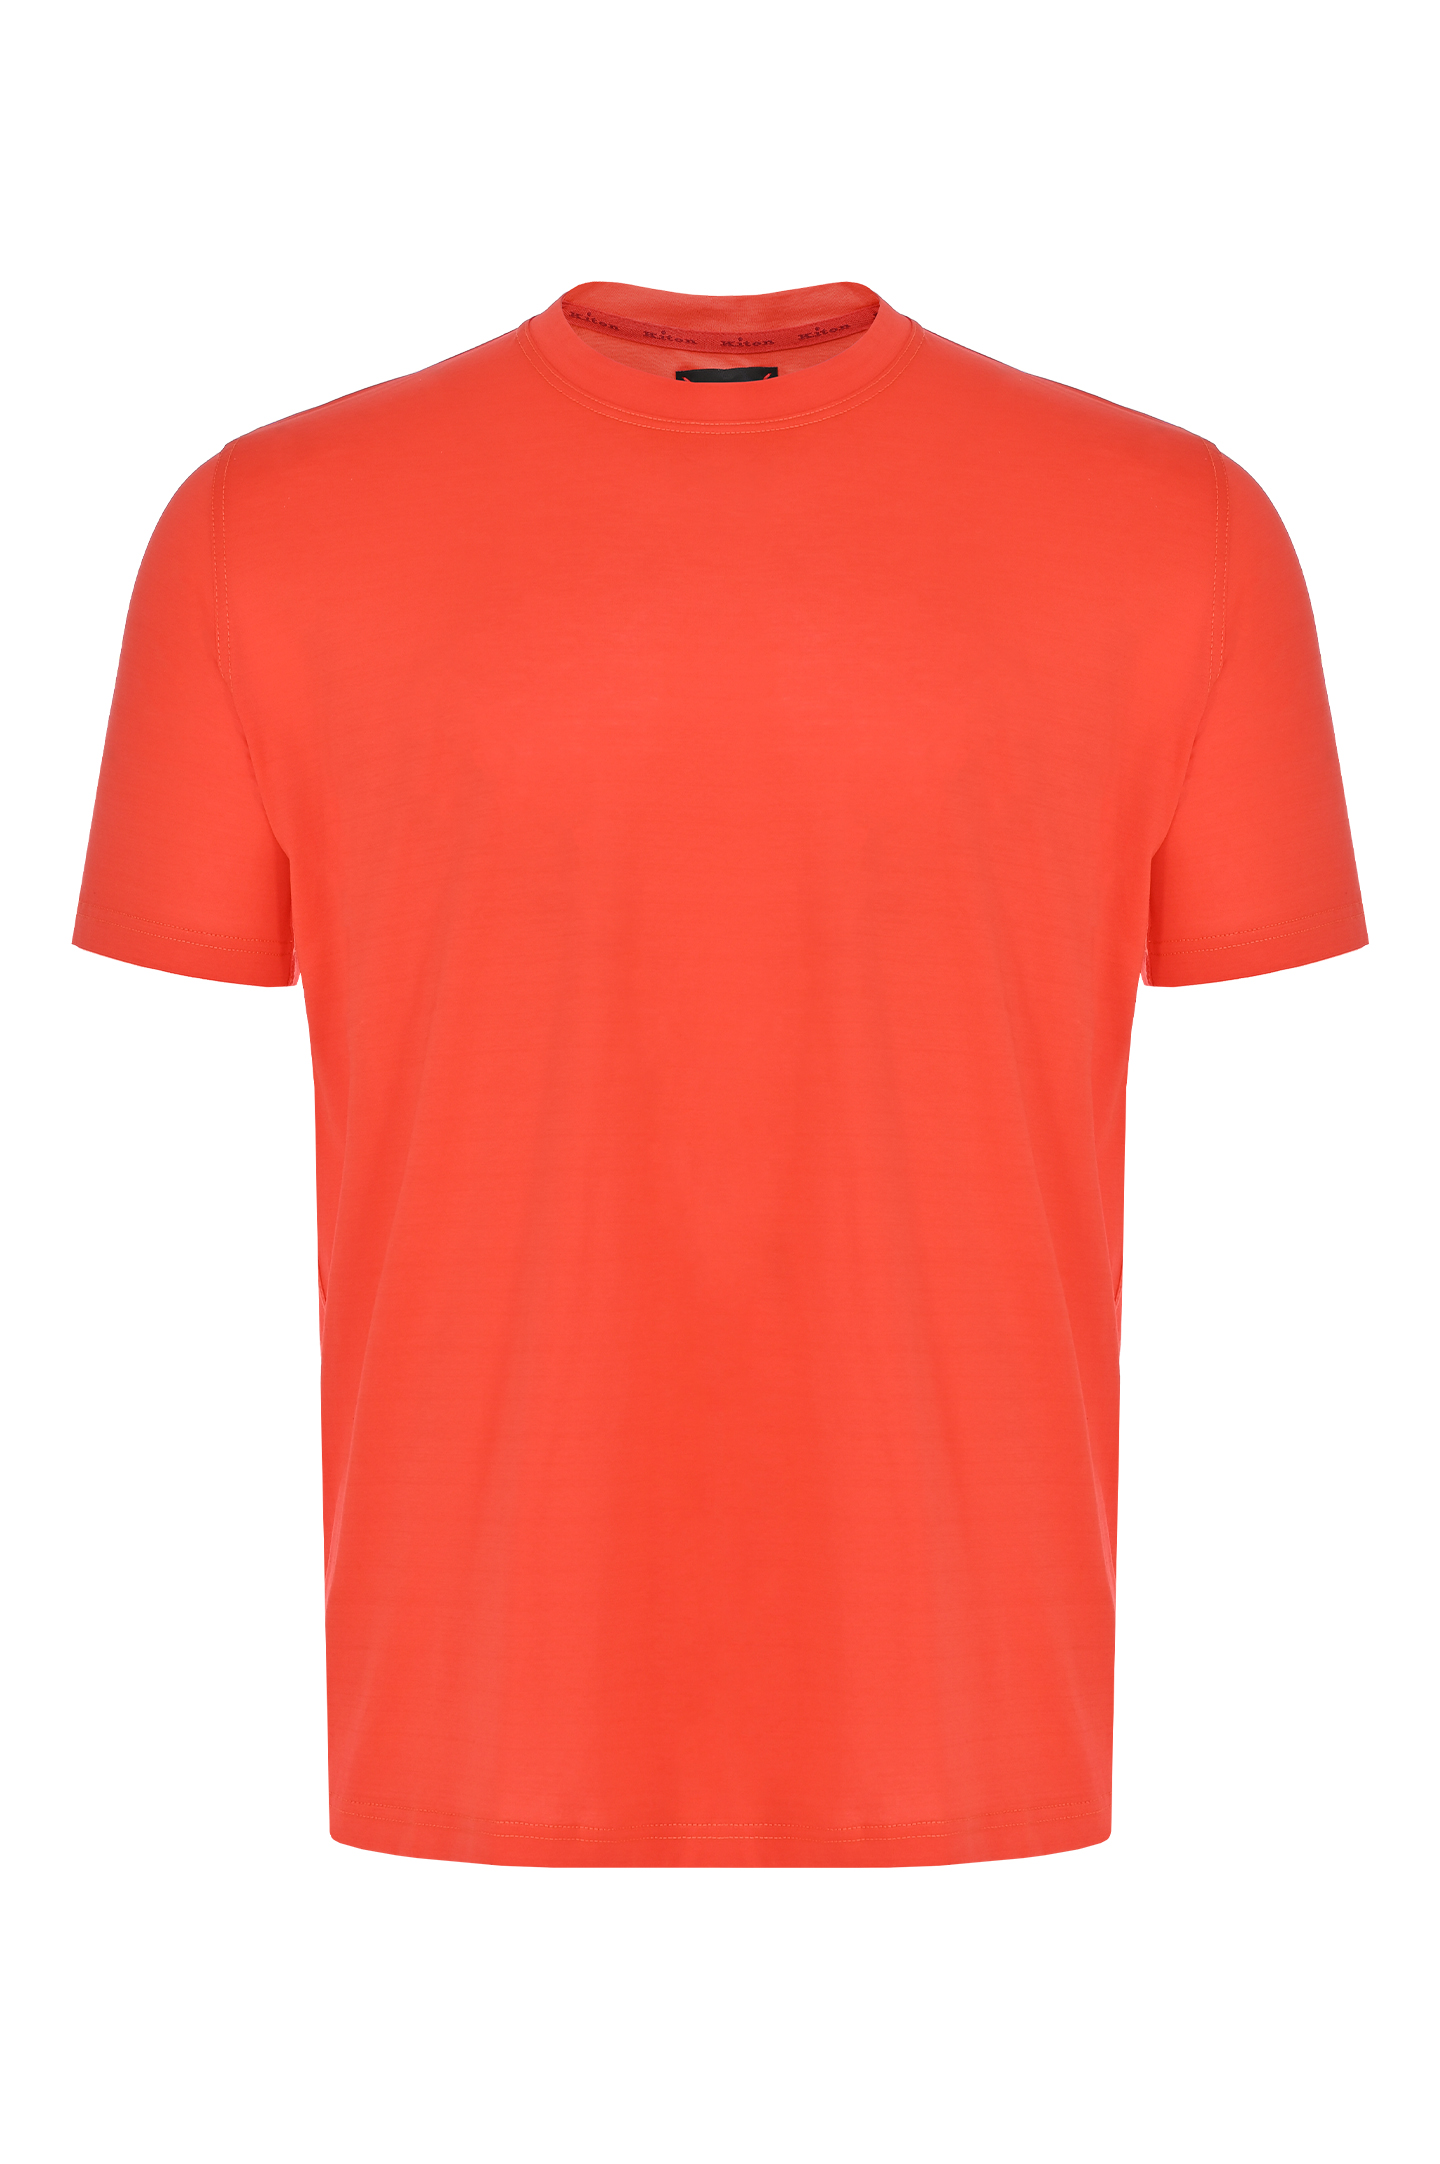 Хлопковая футболка KITON UMK1165K22, цвет: Красный, Мужской